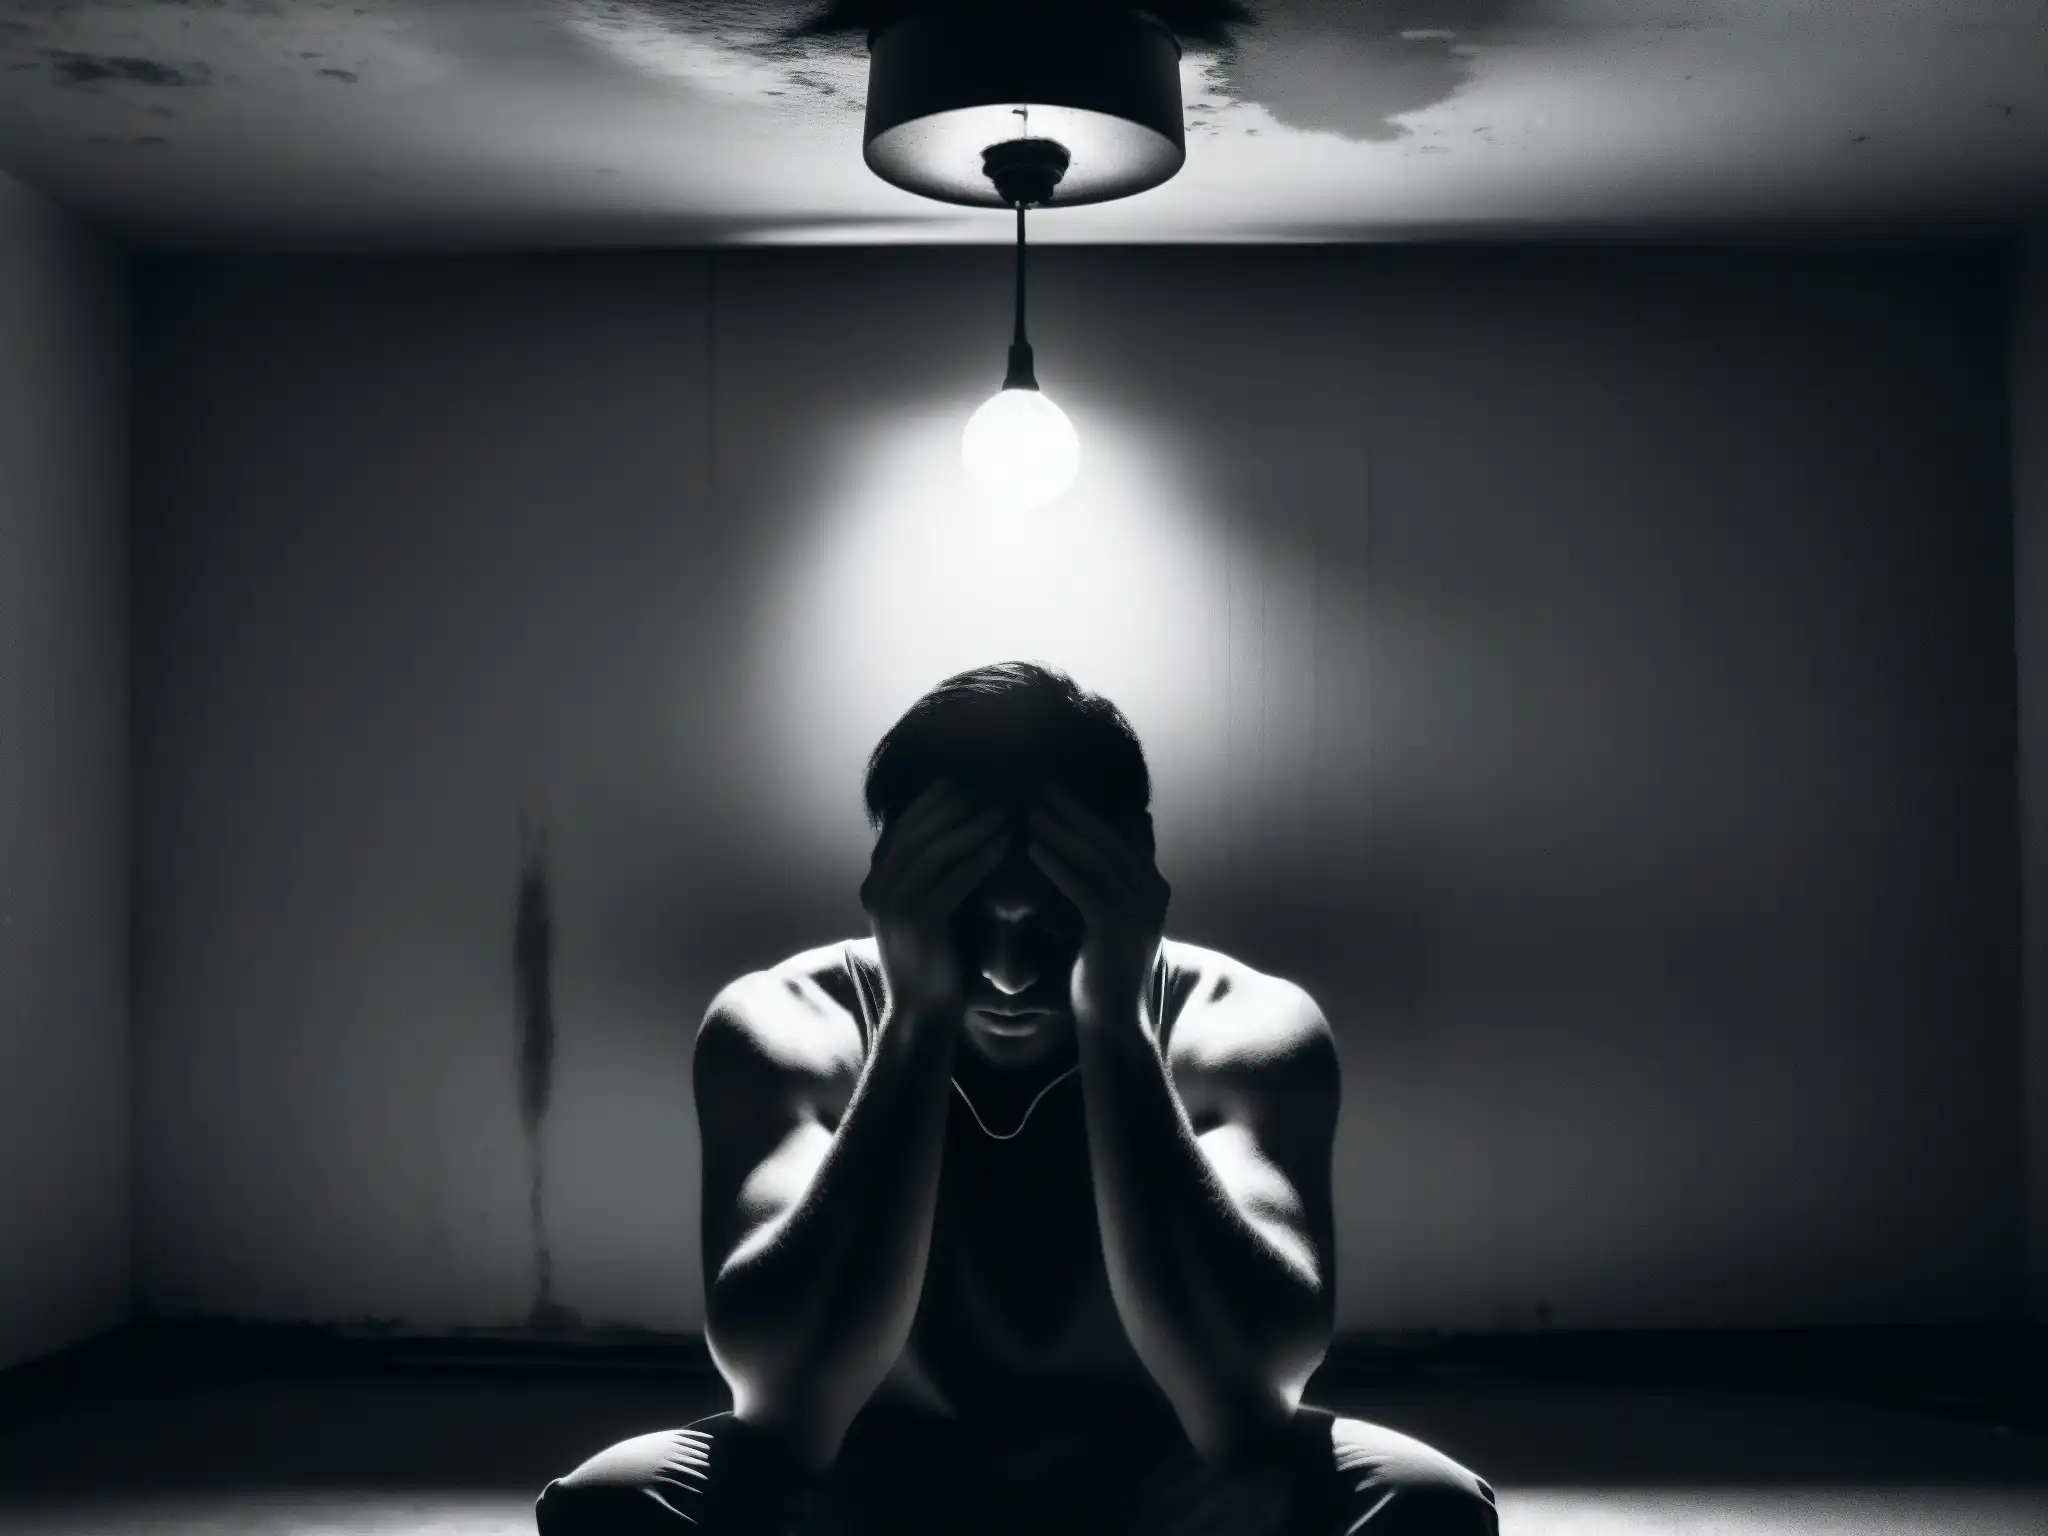 La imagen muestra a una persona sola en una habitación oscura, con expresión de angustia